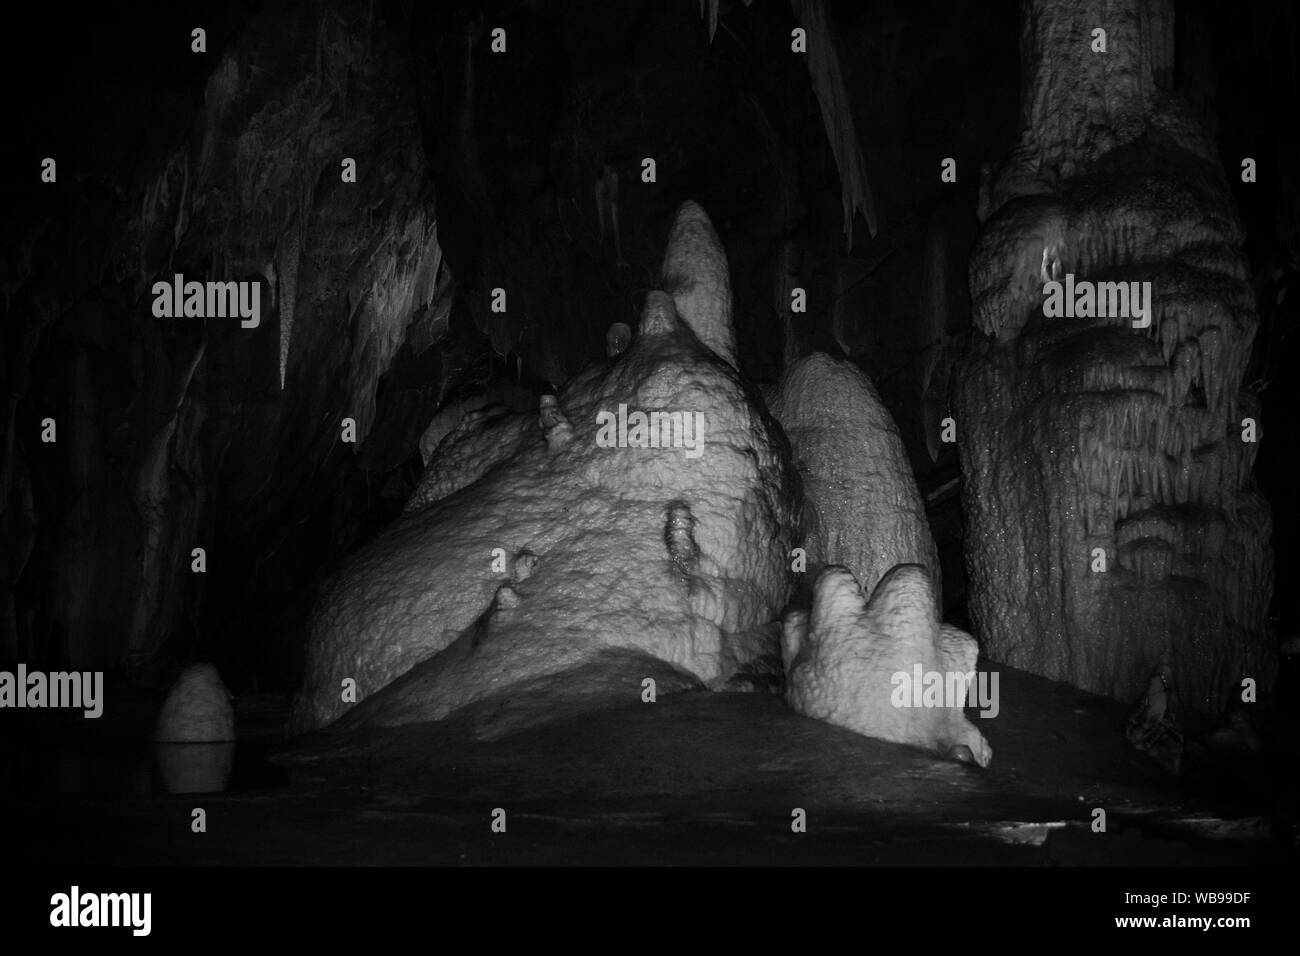 Punkva-hohle, epischen Höhlensystem mit vielen Höhle Formationen wie Stalaktiten, Stalagmiten und stalagnates, Mährischer Karst, Tschechische Republik Stockfoto